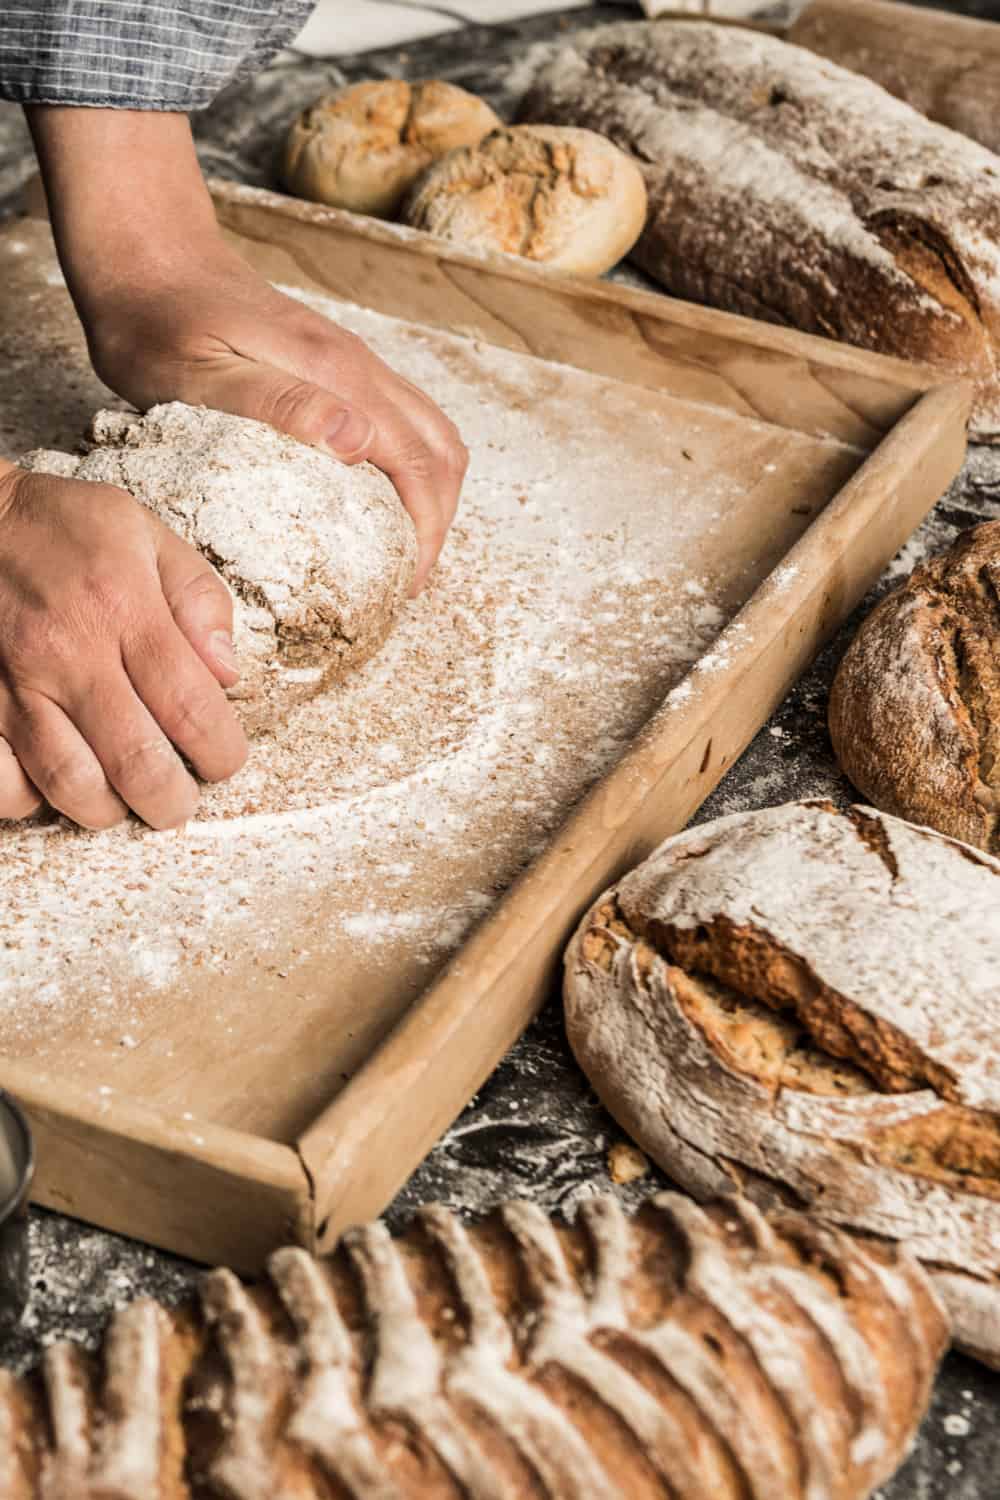 A brief history of bread